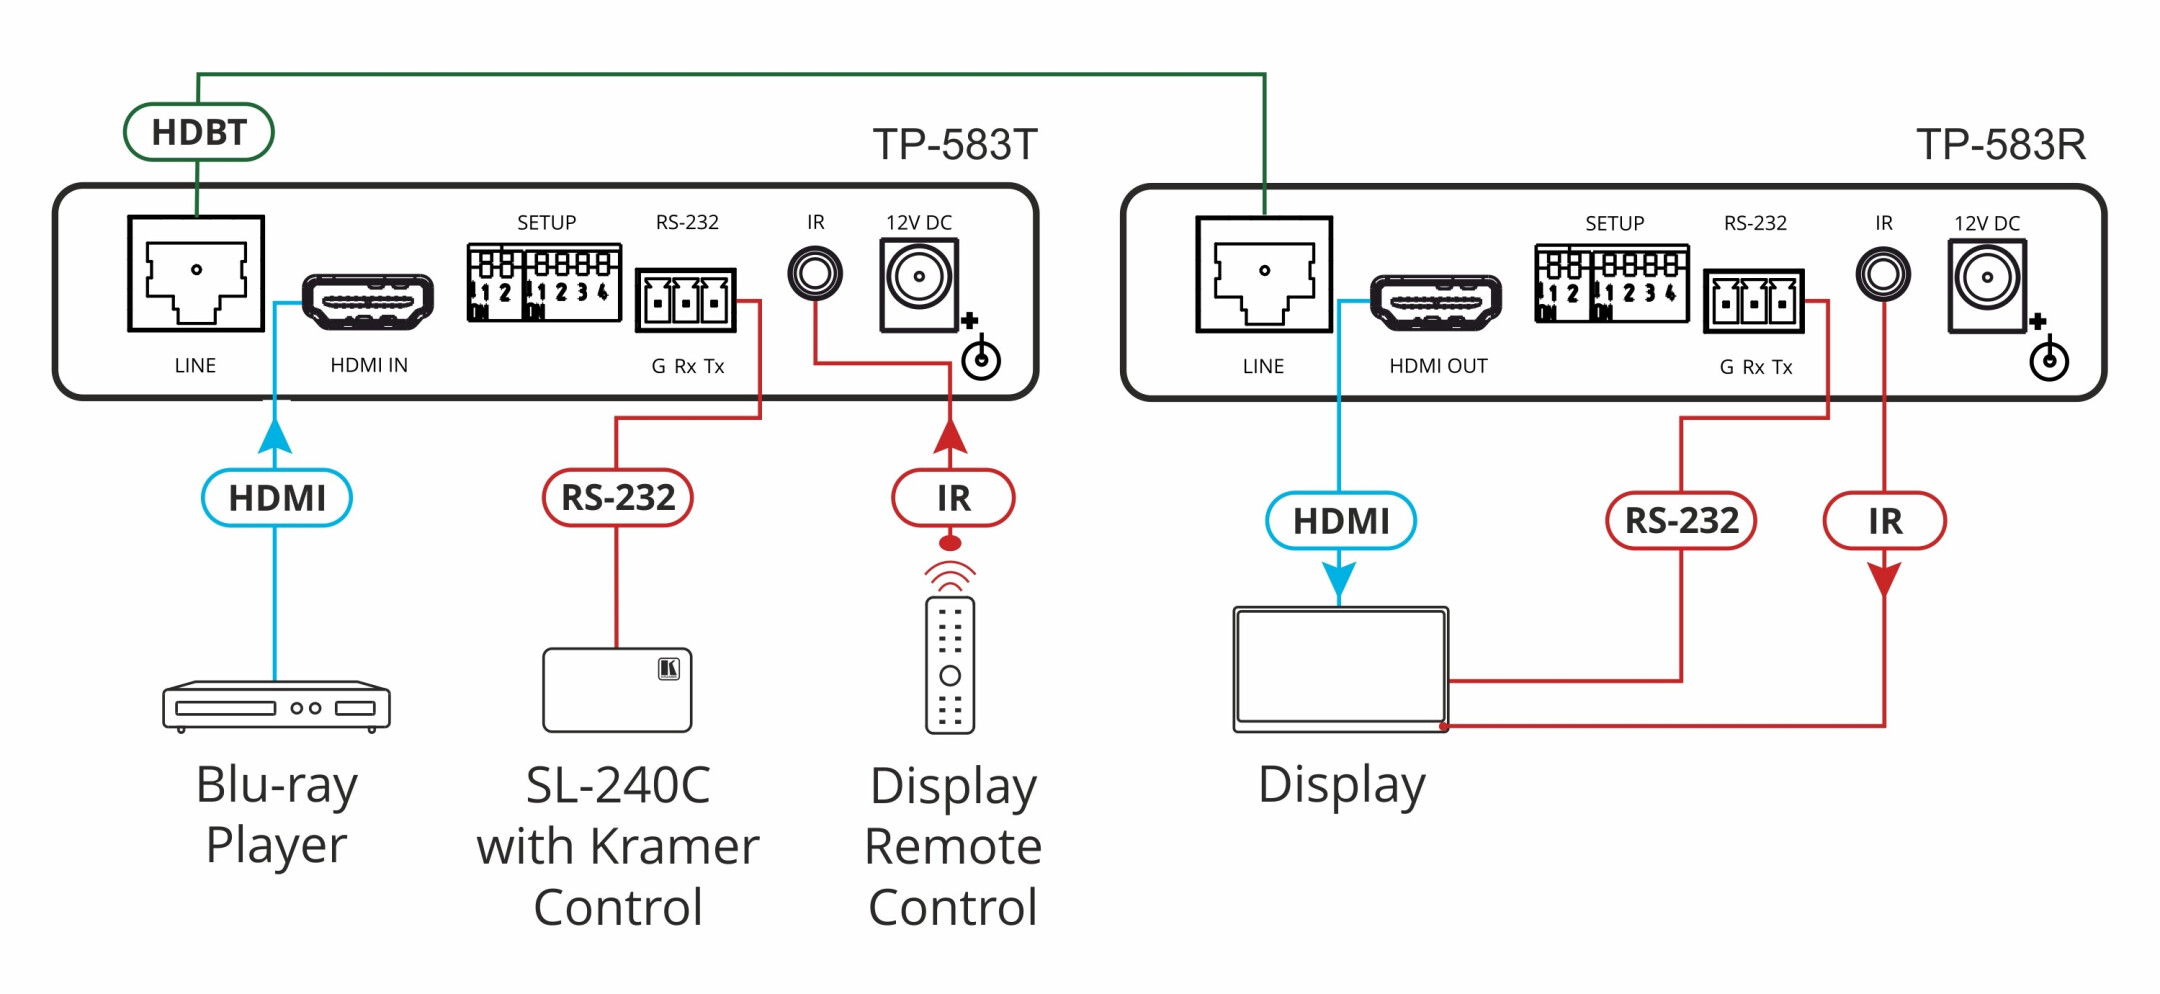 Kramer-TP-583R-4K-HDR-HDMI-ontvanger-met-RS-232-en-IR-over-HDBaseT-met-groot-bereik